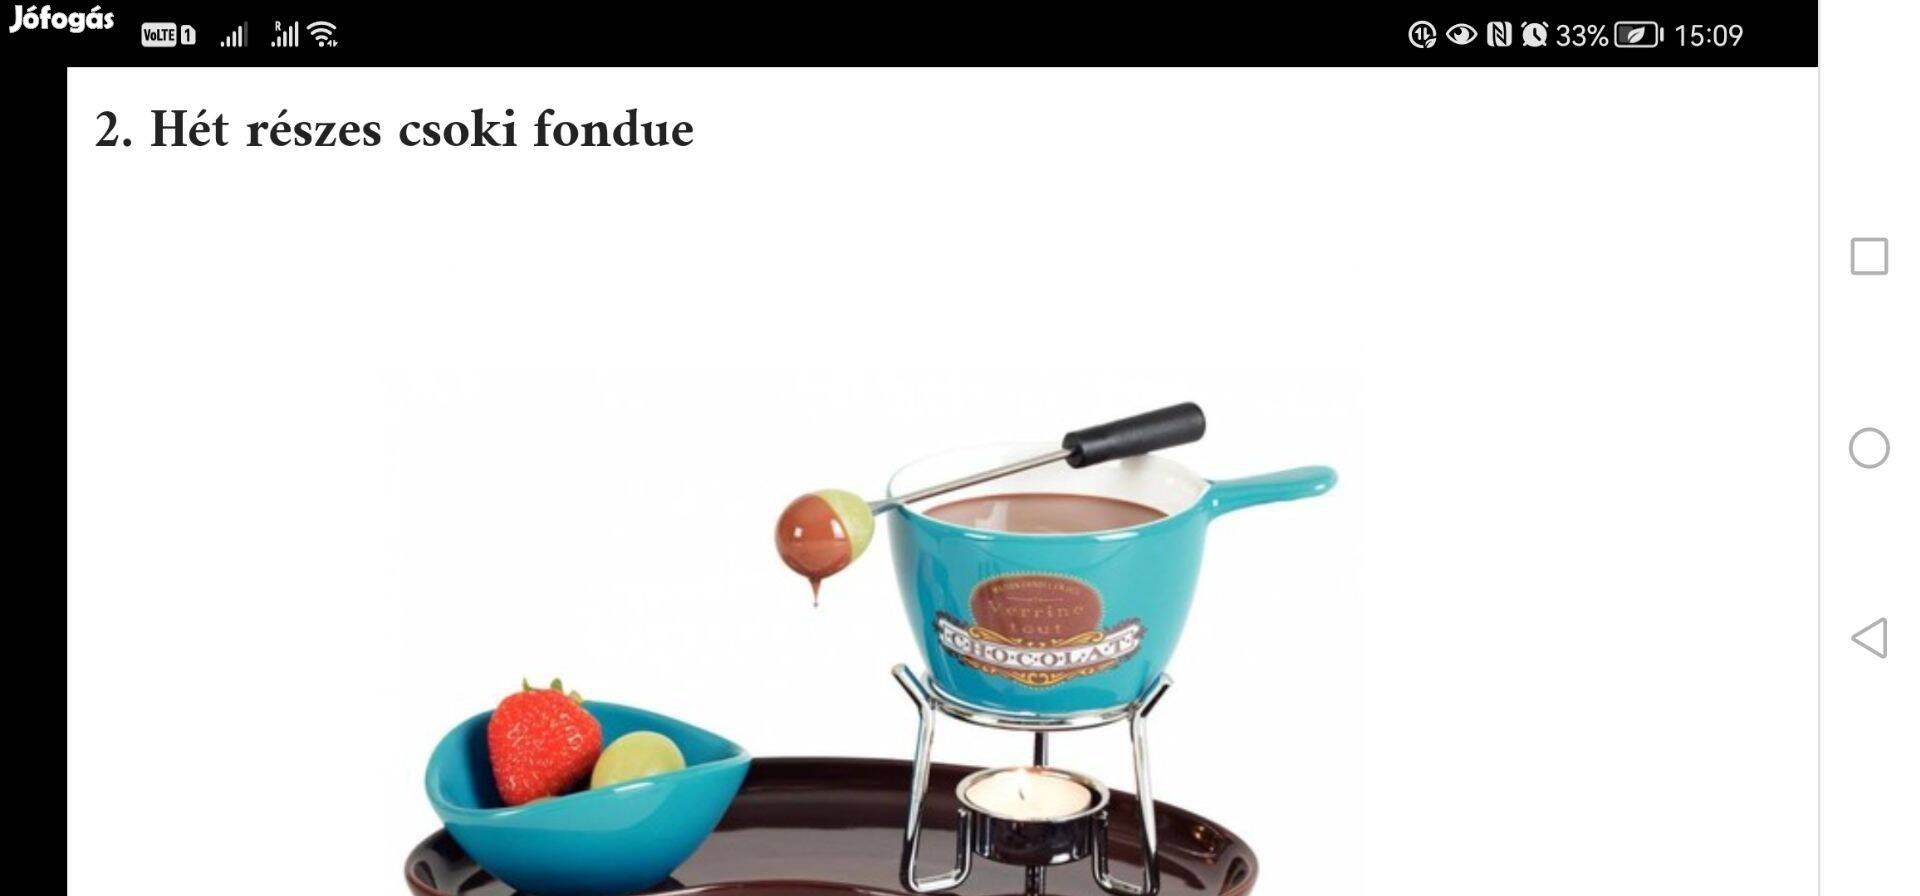 Új csoki fondue, fondü készlet 3000.-